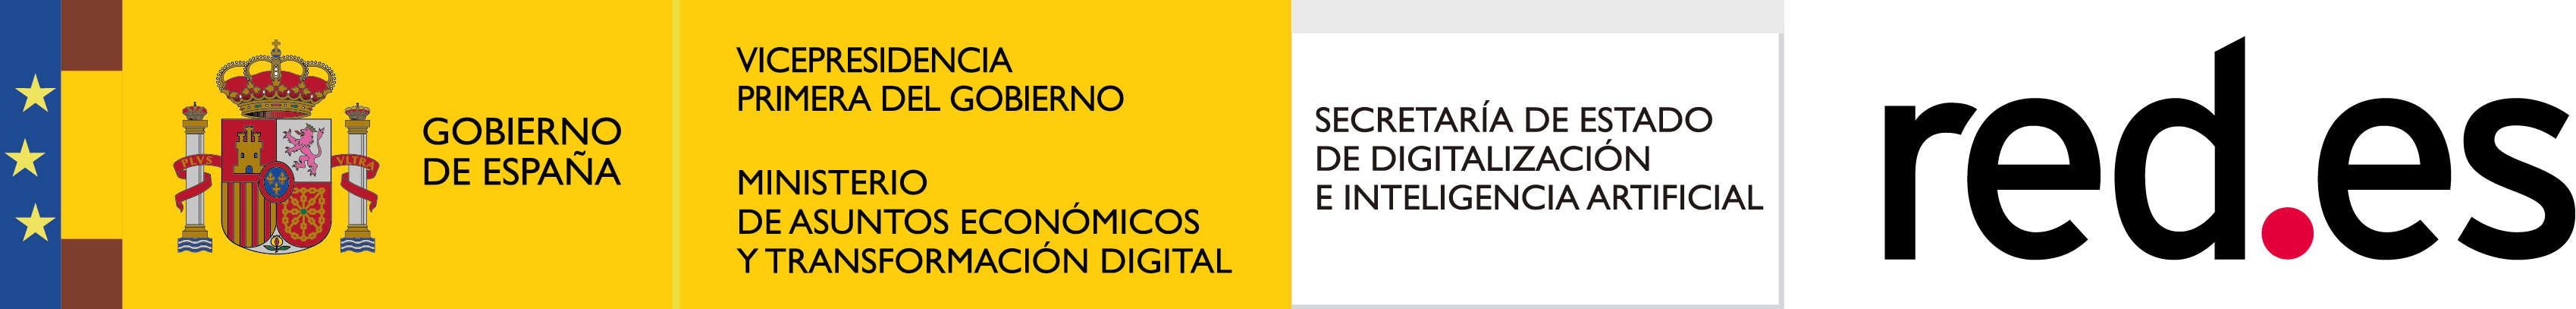 gobierno de españa - vicepresidencia primera del gobierno - ministerio de asuntos economicos y transformacion digital - secretaria de estado de digitalizacion e inteligencia artificial - red.es